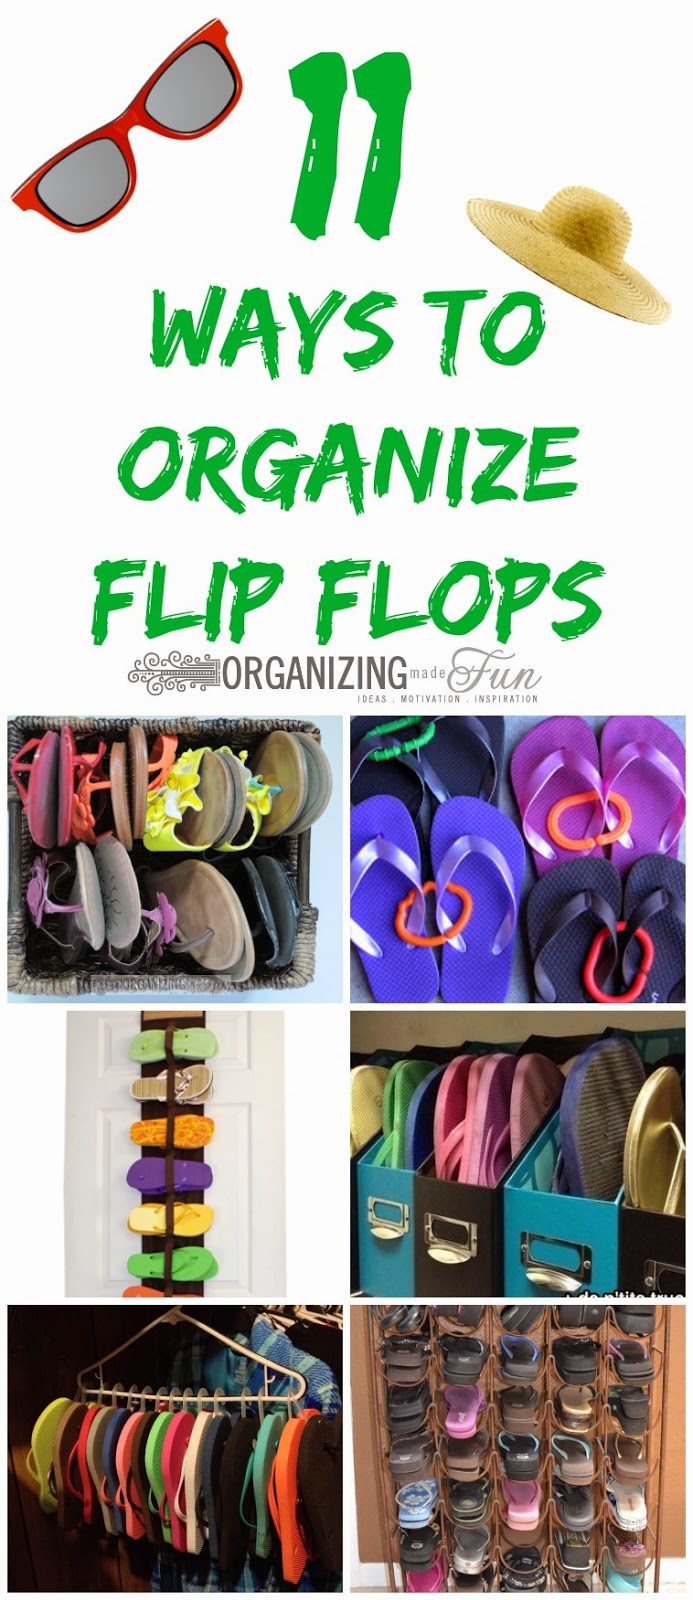 http://3.bp.blogspot.com/-eUX0oi3dbd0/U4-w3FRwzGI/AAAAAAAATG8/qE05hVgxKLM/s1600/11+Ways+to+Organize+Flip+Flops.jpg